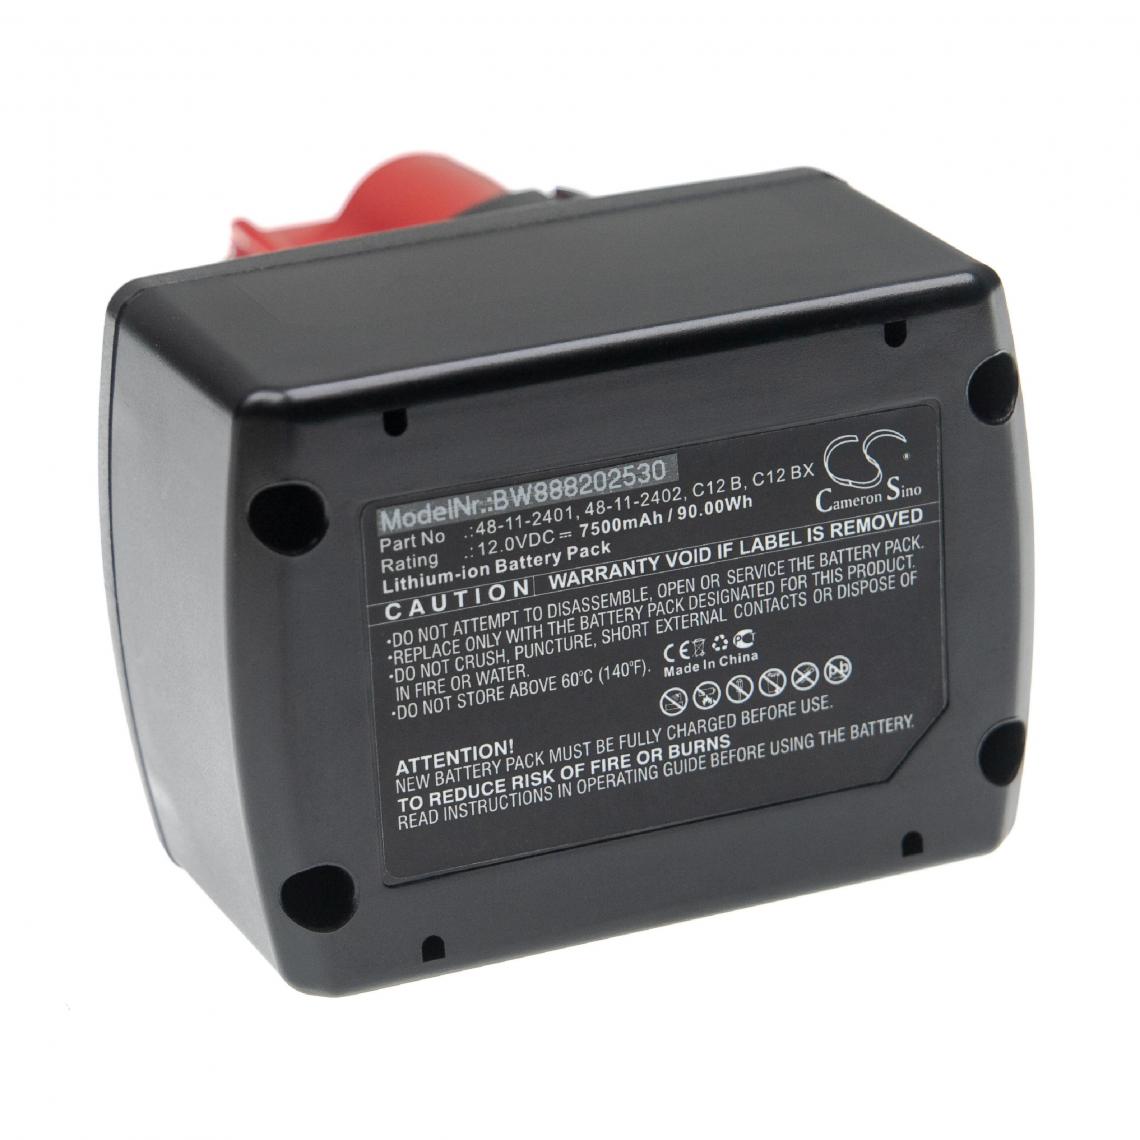 Vhbw - vhbw Batterie compatible avec Milwaukee 2454-20, 2454-22, 2455-20, 2455-22, 2456-21, 2457-20 outil électrique (7500mAh Li-ion 12 V) - Clouterie